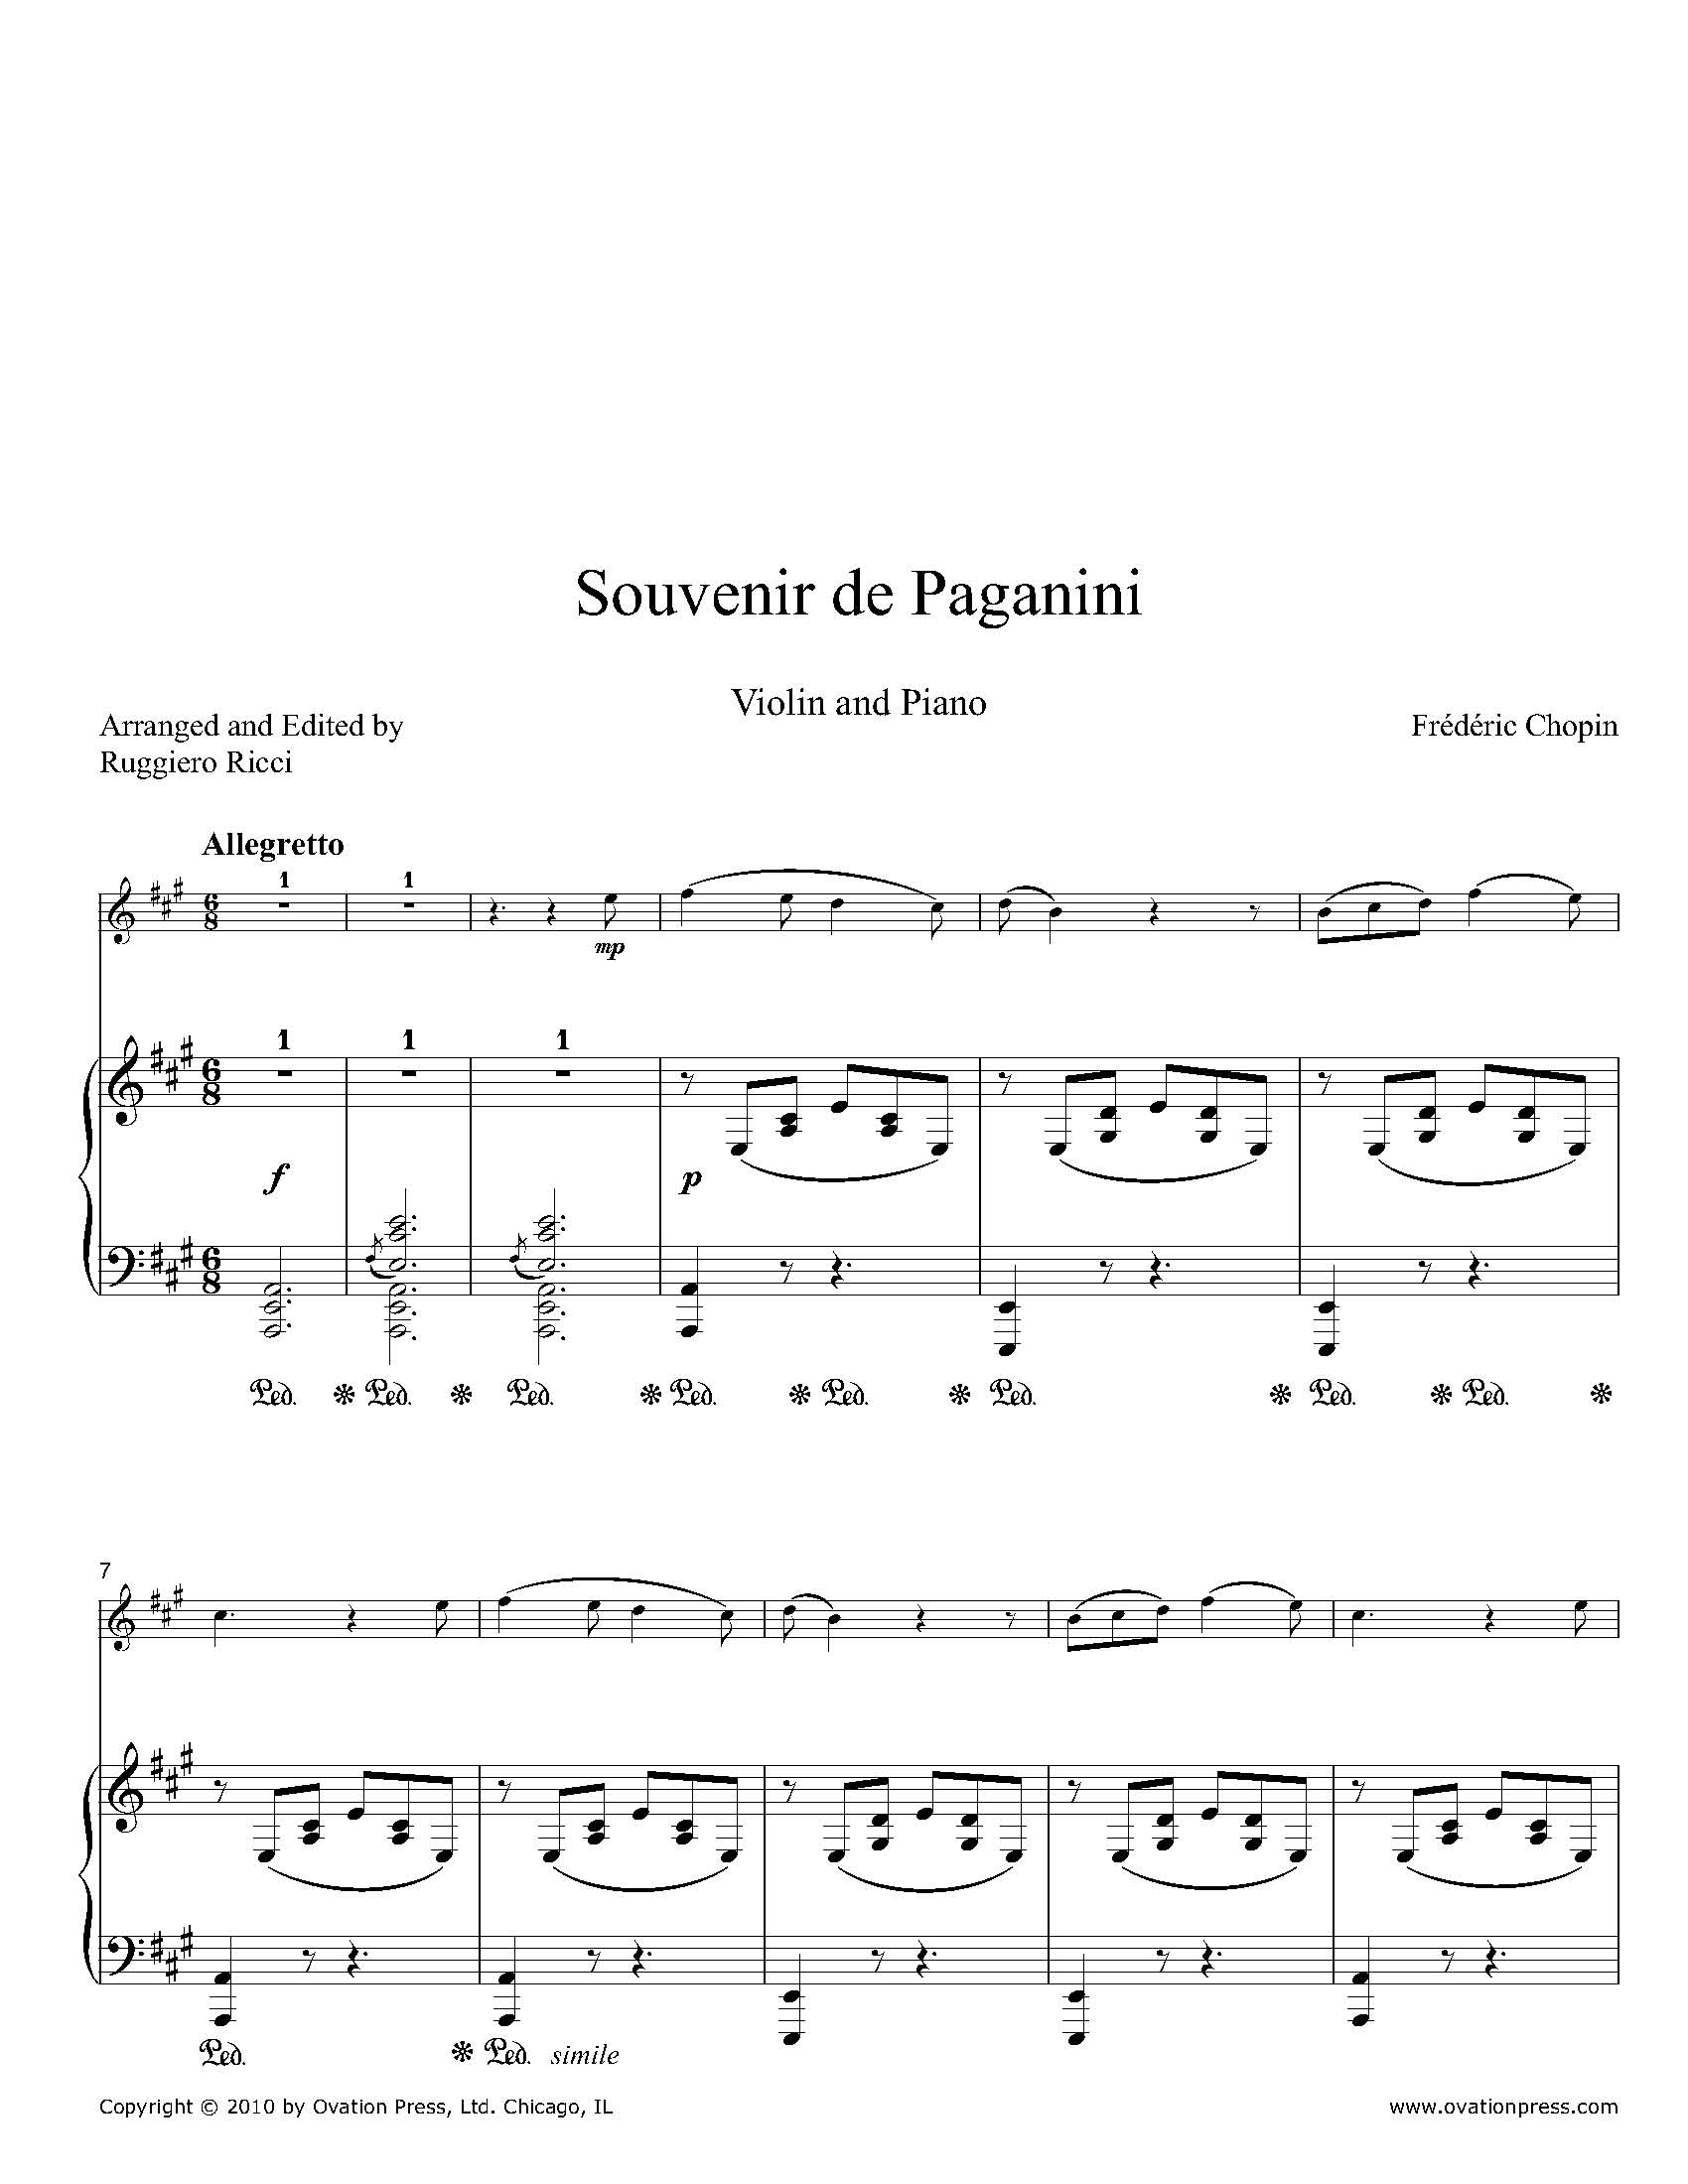 Souvenir de Paganini